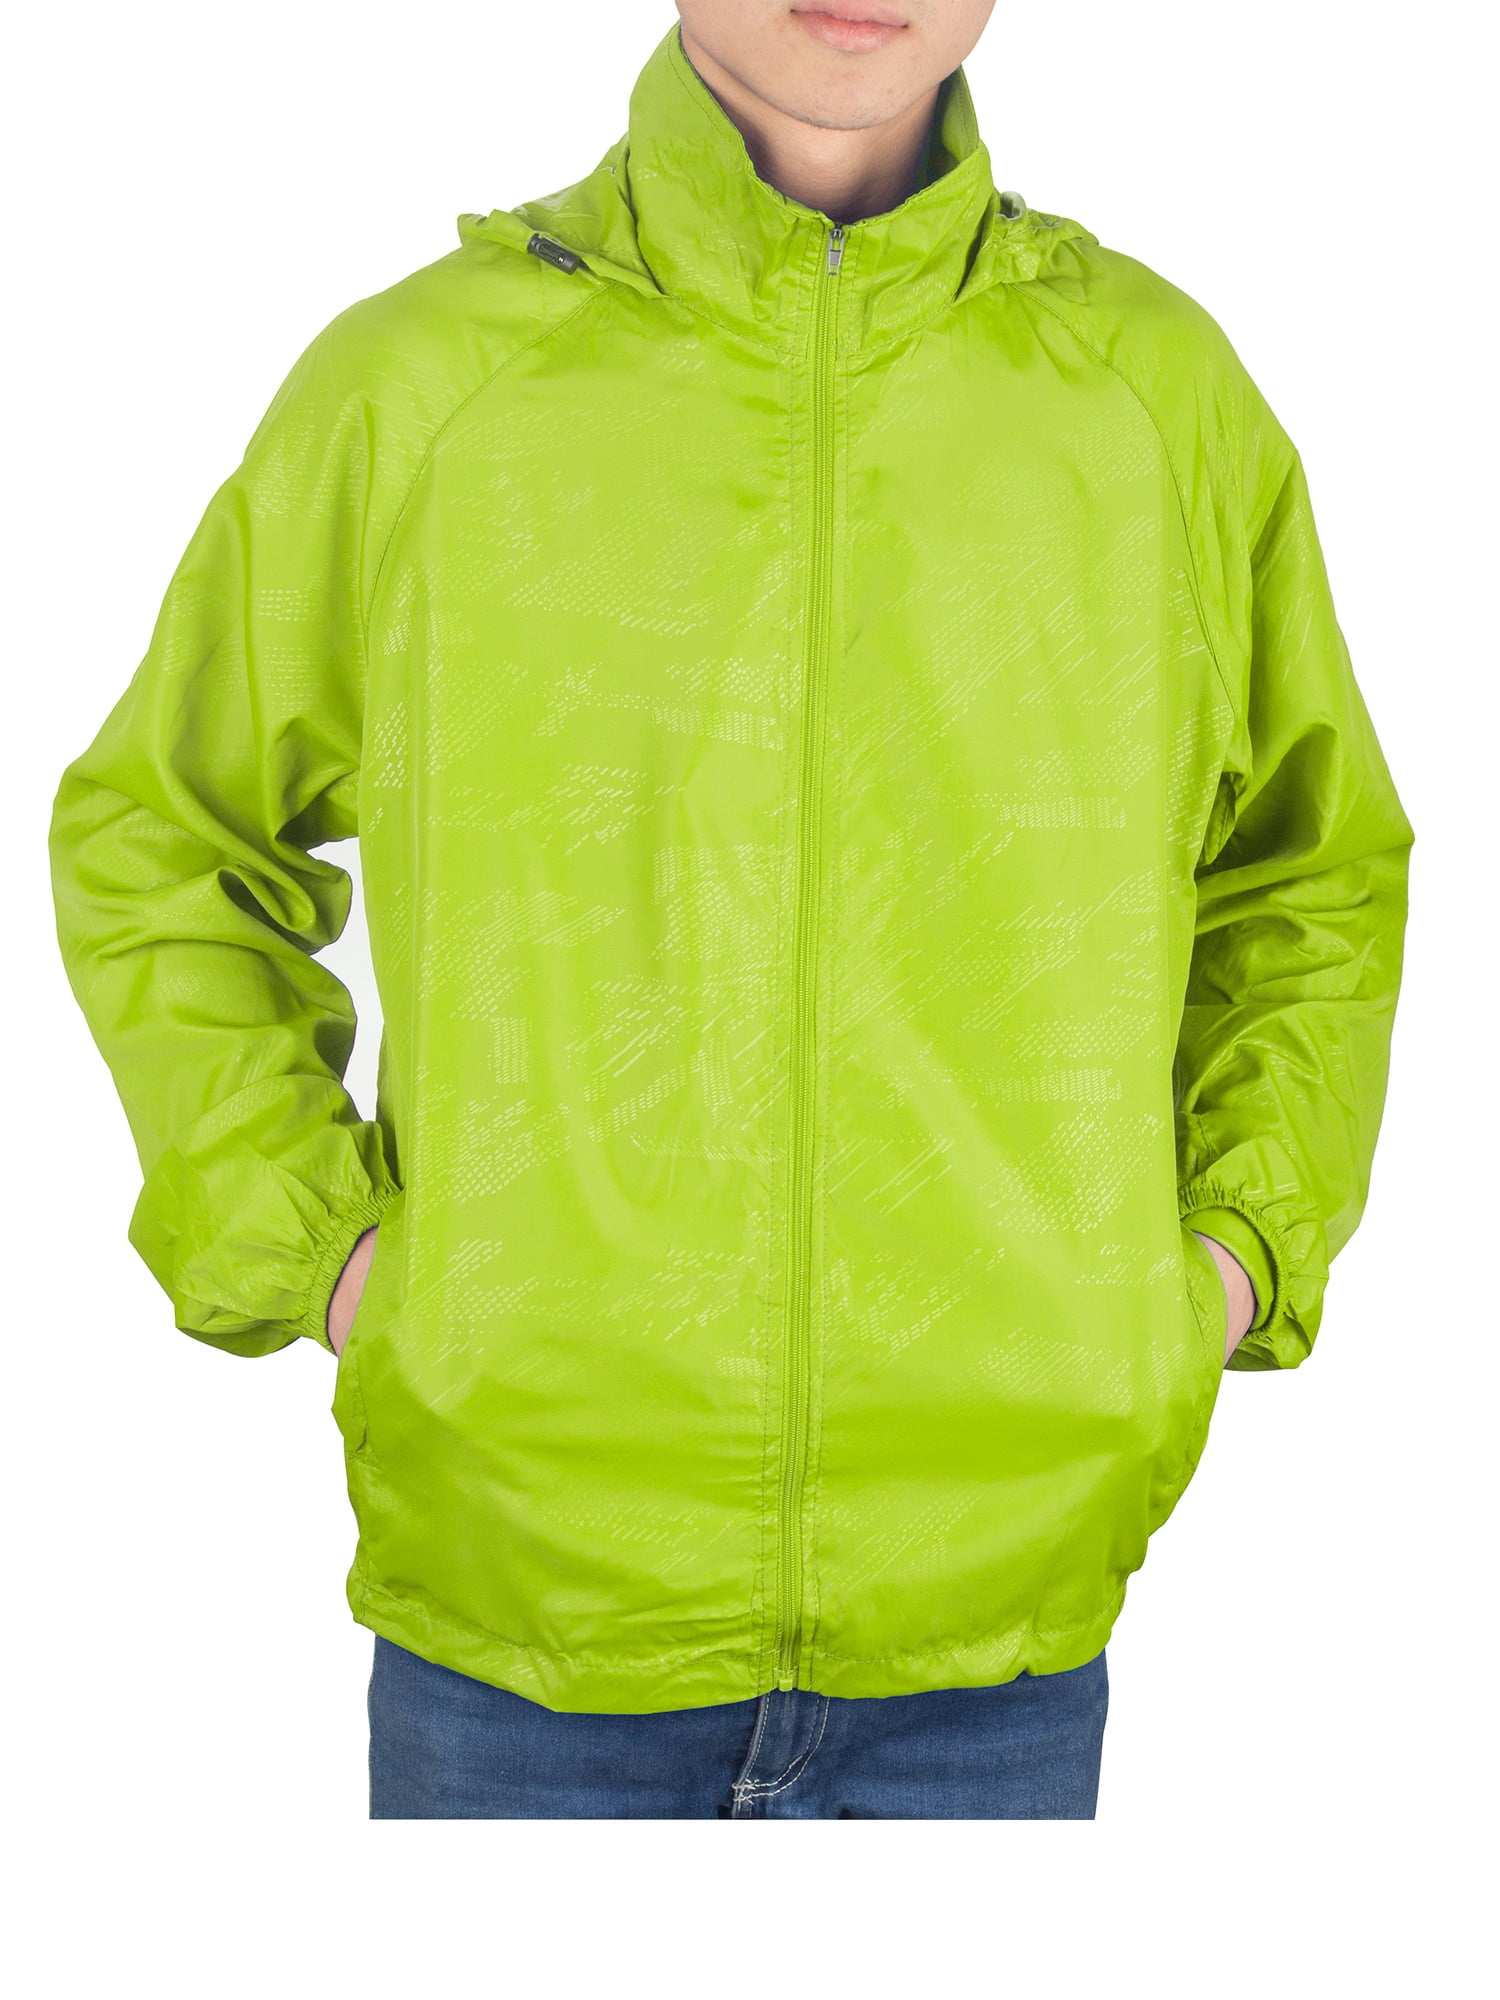 YONGM Mens Windproof Watertight Sportswear Outdoor Hoodie Trench Rain Jacket